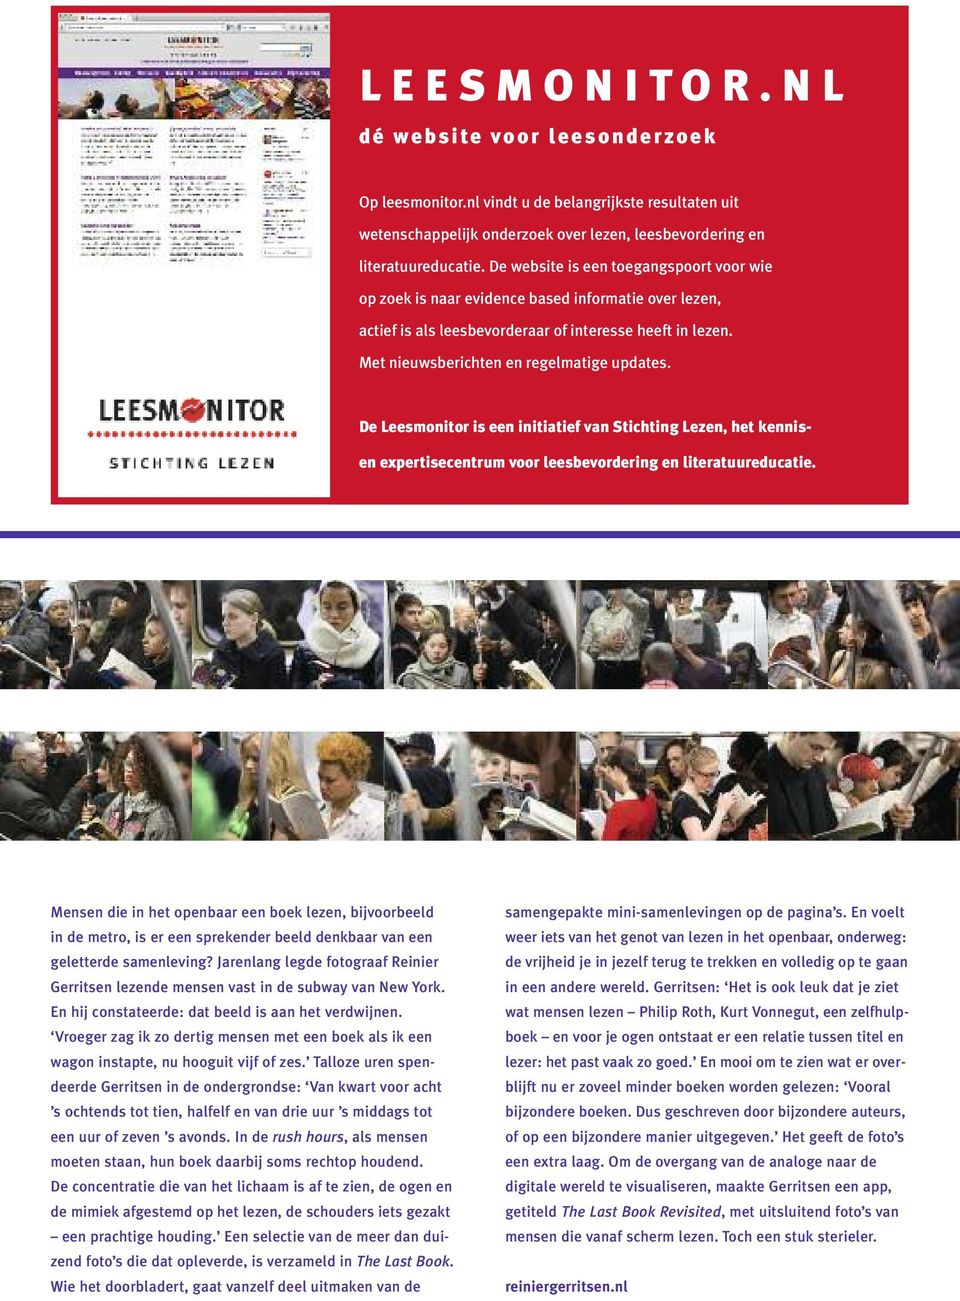 De Leesmonitor is een initiatief van Stichting Lezen, het kennis- en expertisecentrum voor leesbevordering en literatuureducatie.